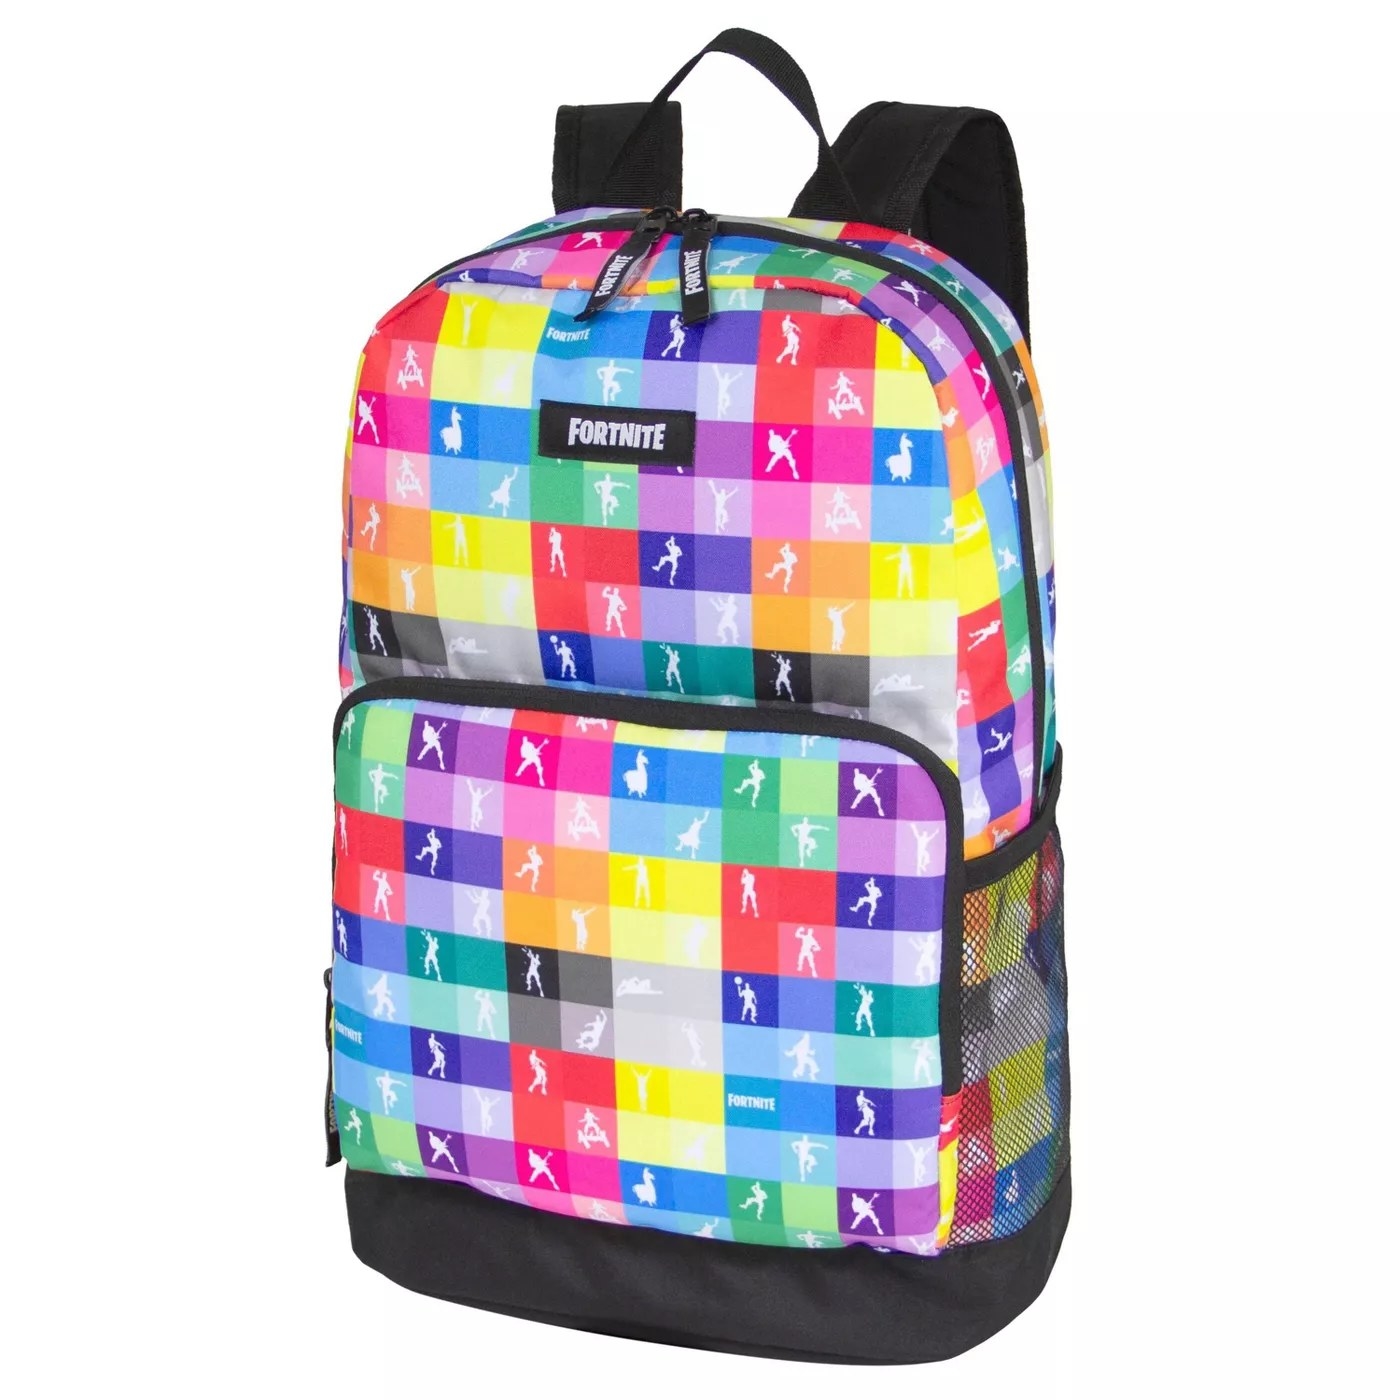 A colorful Fortnite backpack